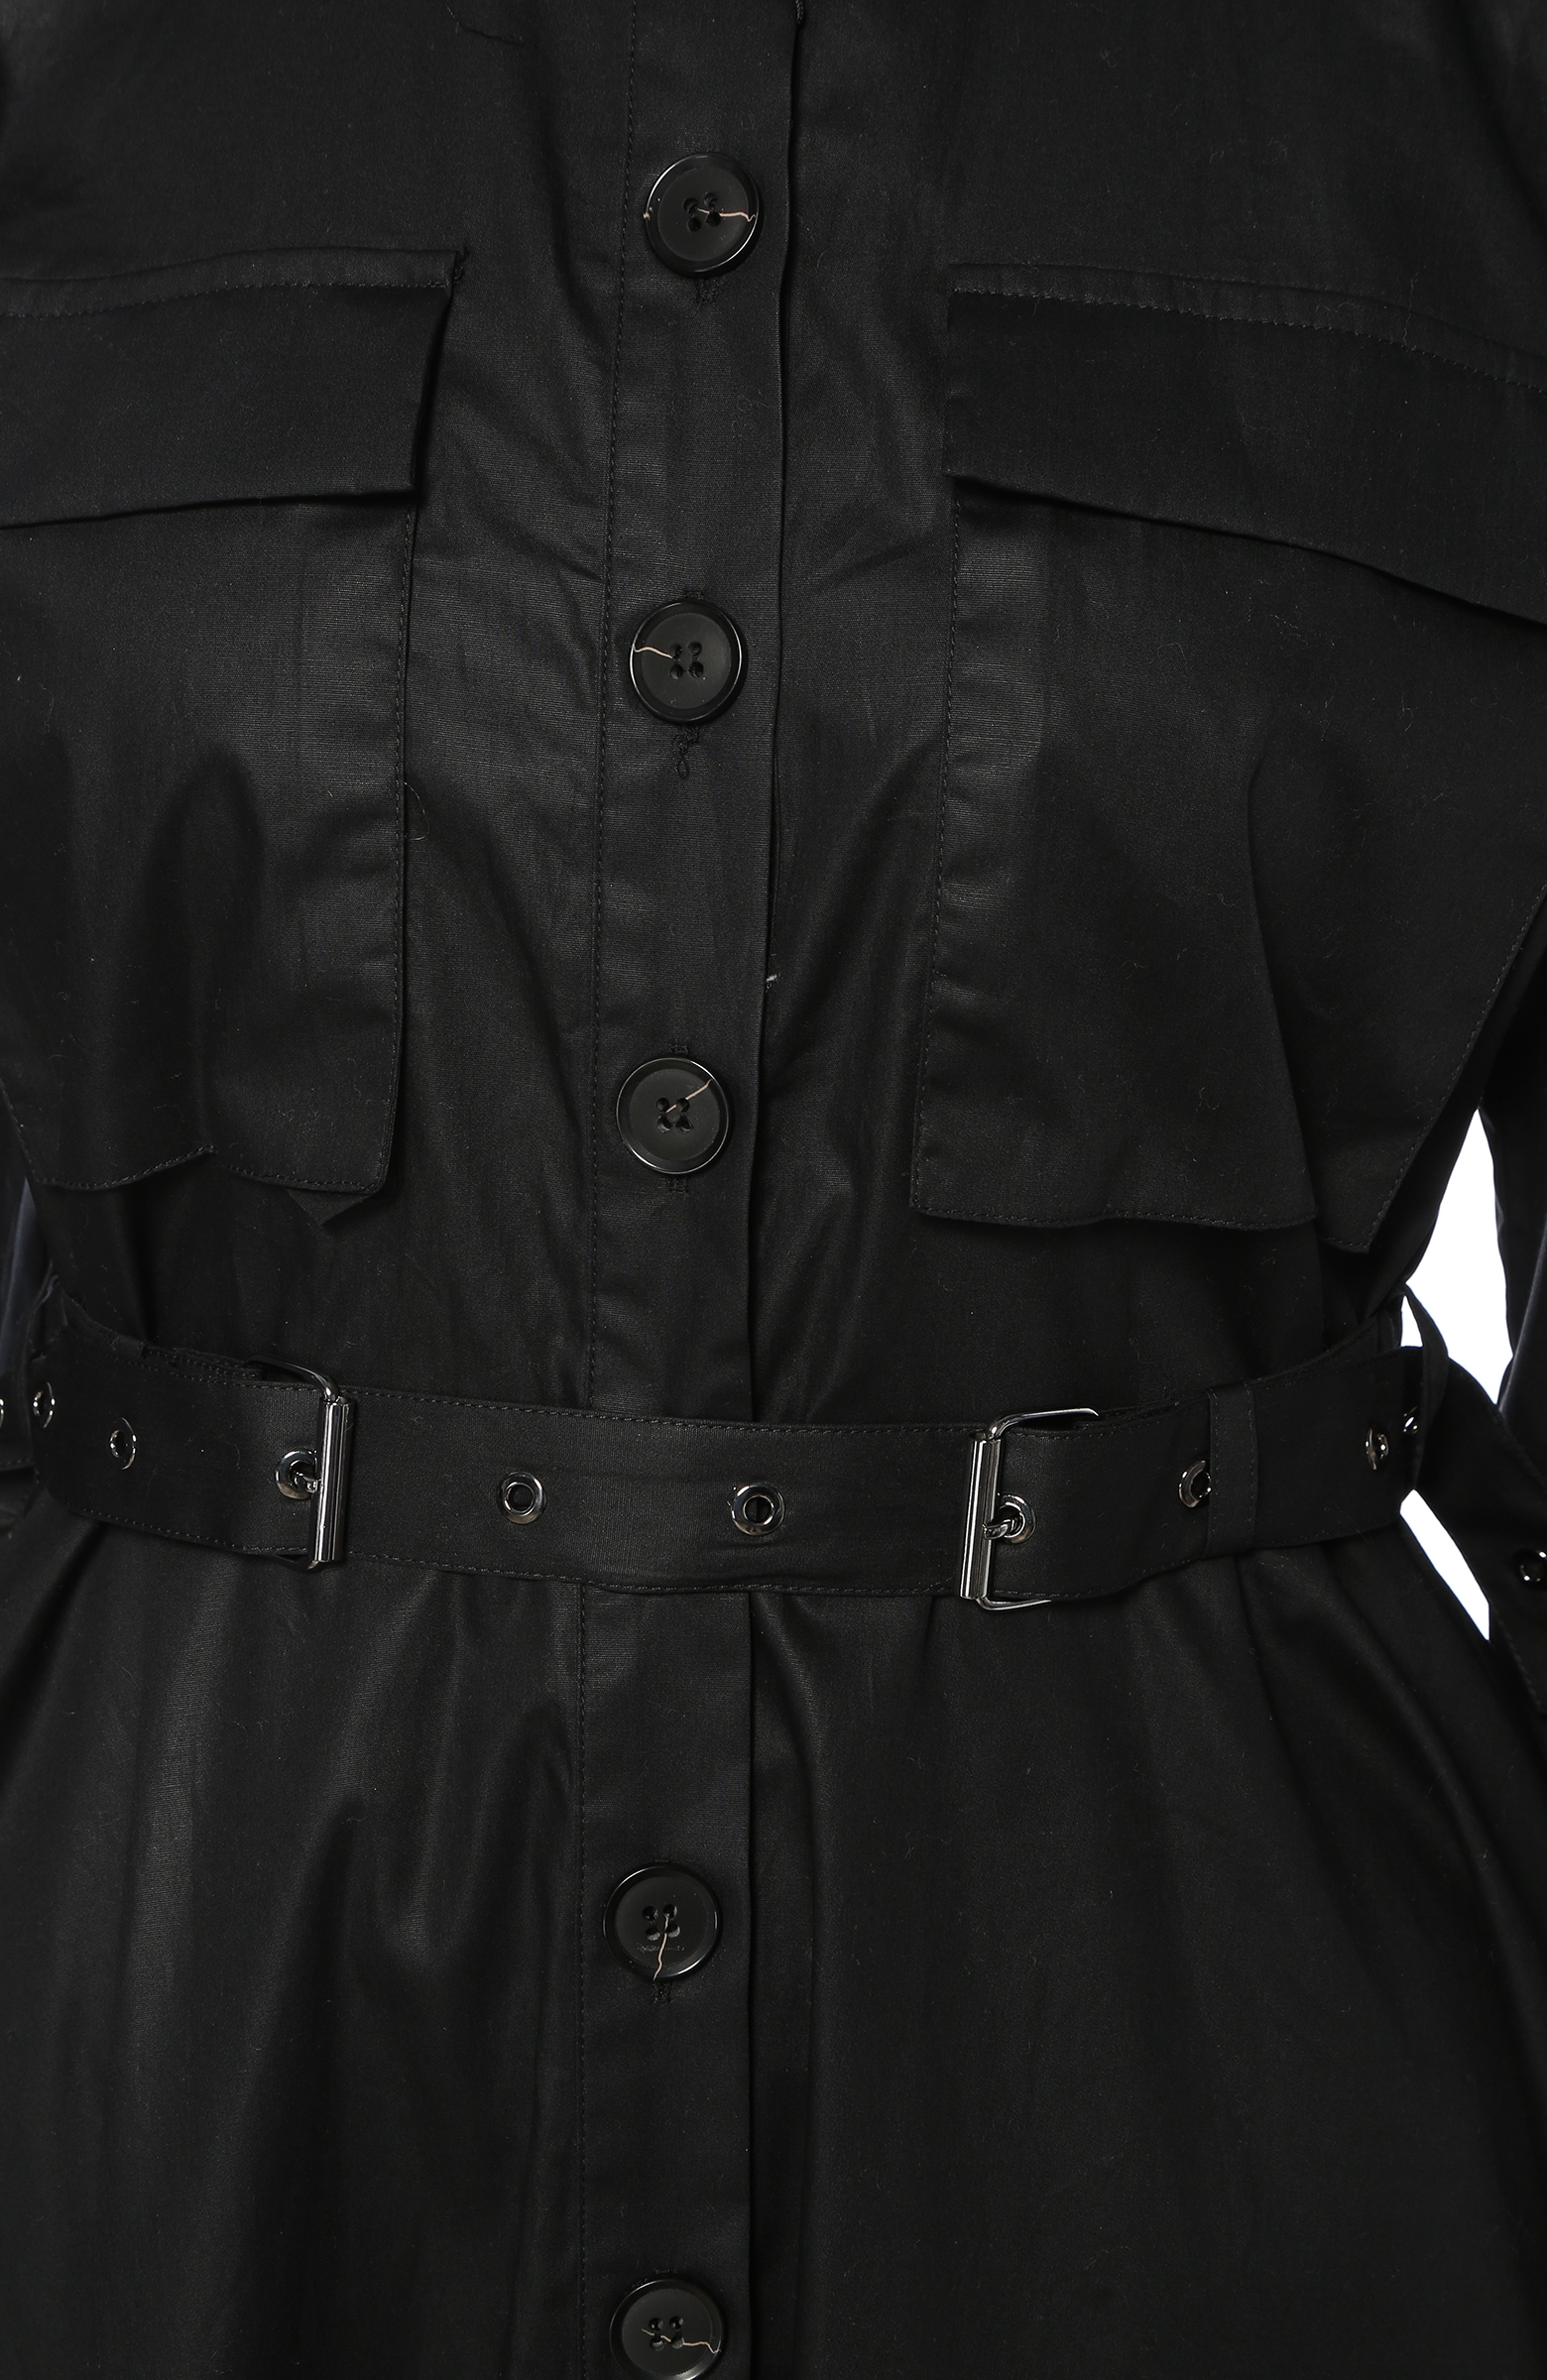 Siyah Kemer Detaylı Midi Elbise